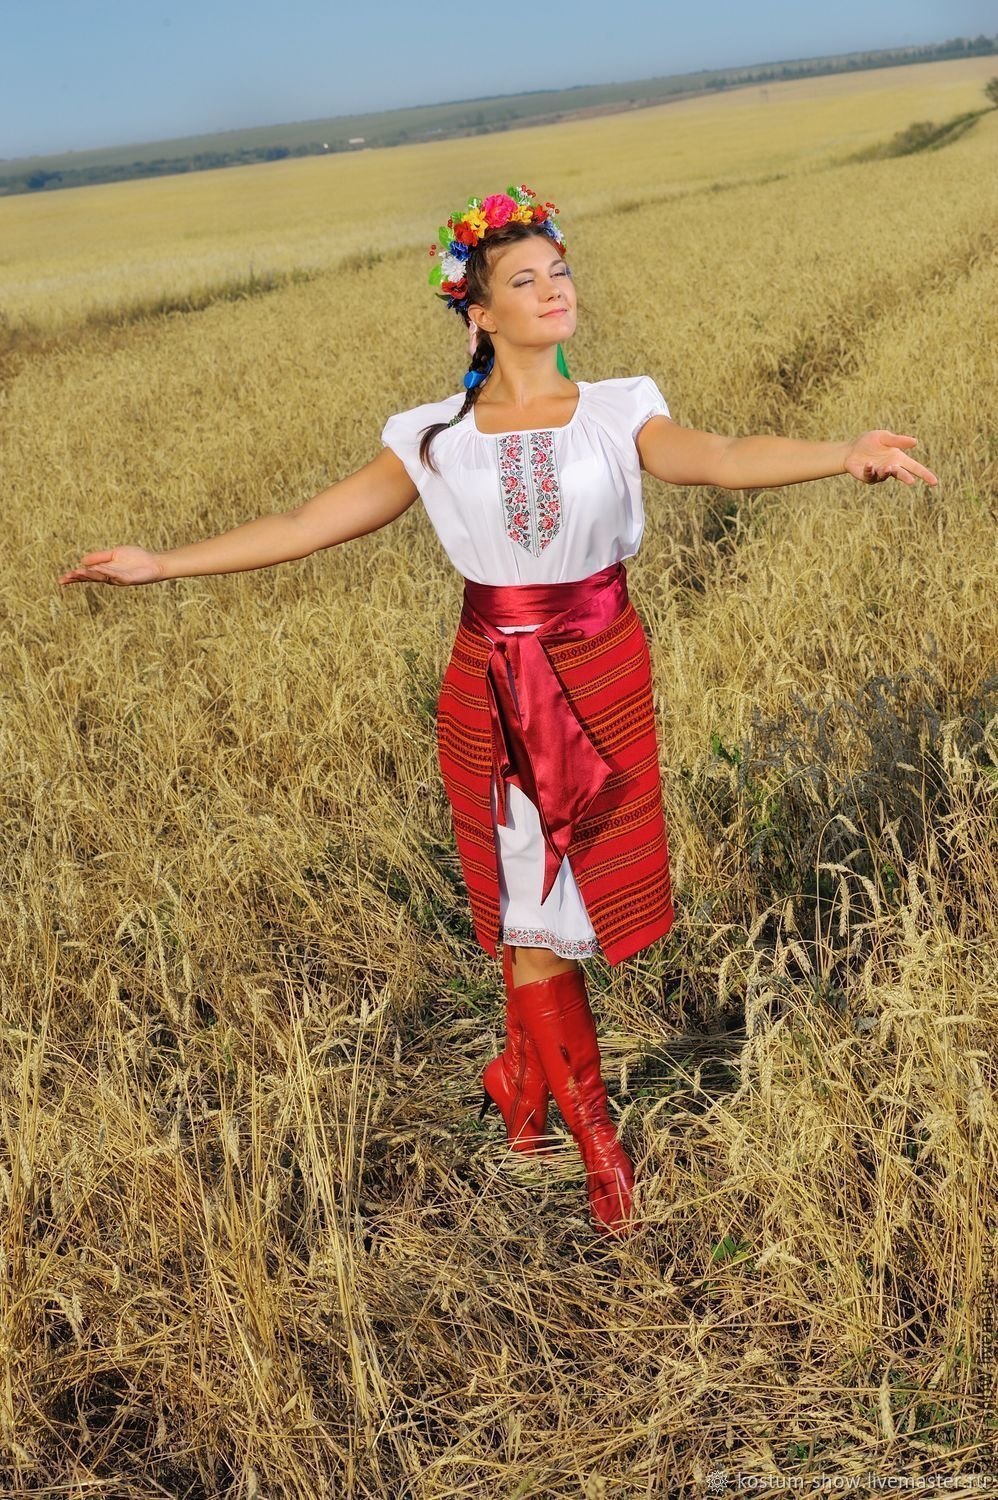 Украинский костюм